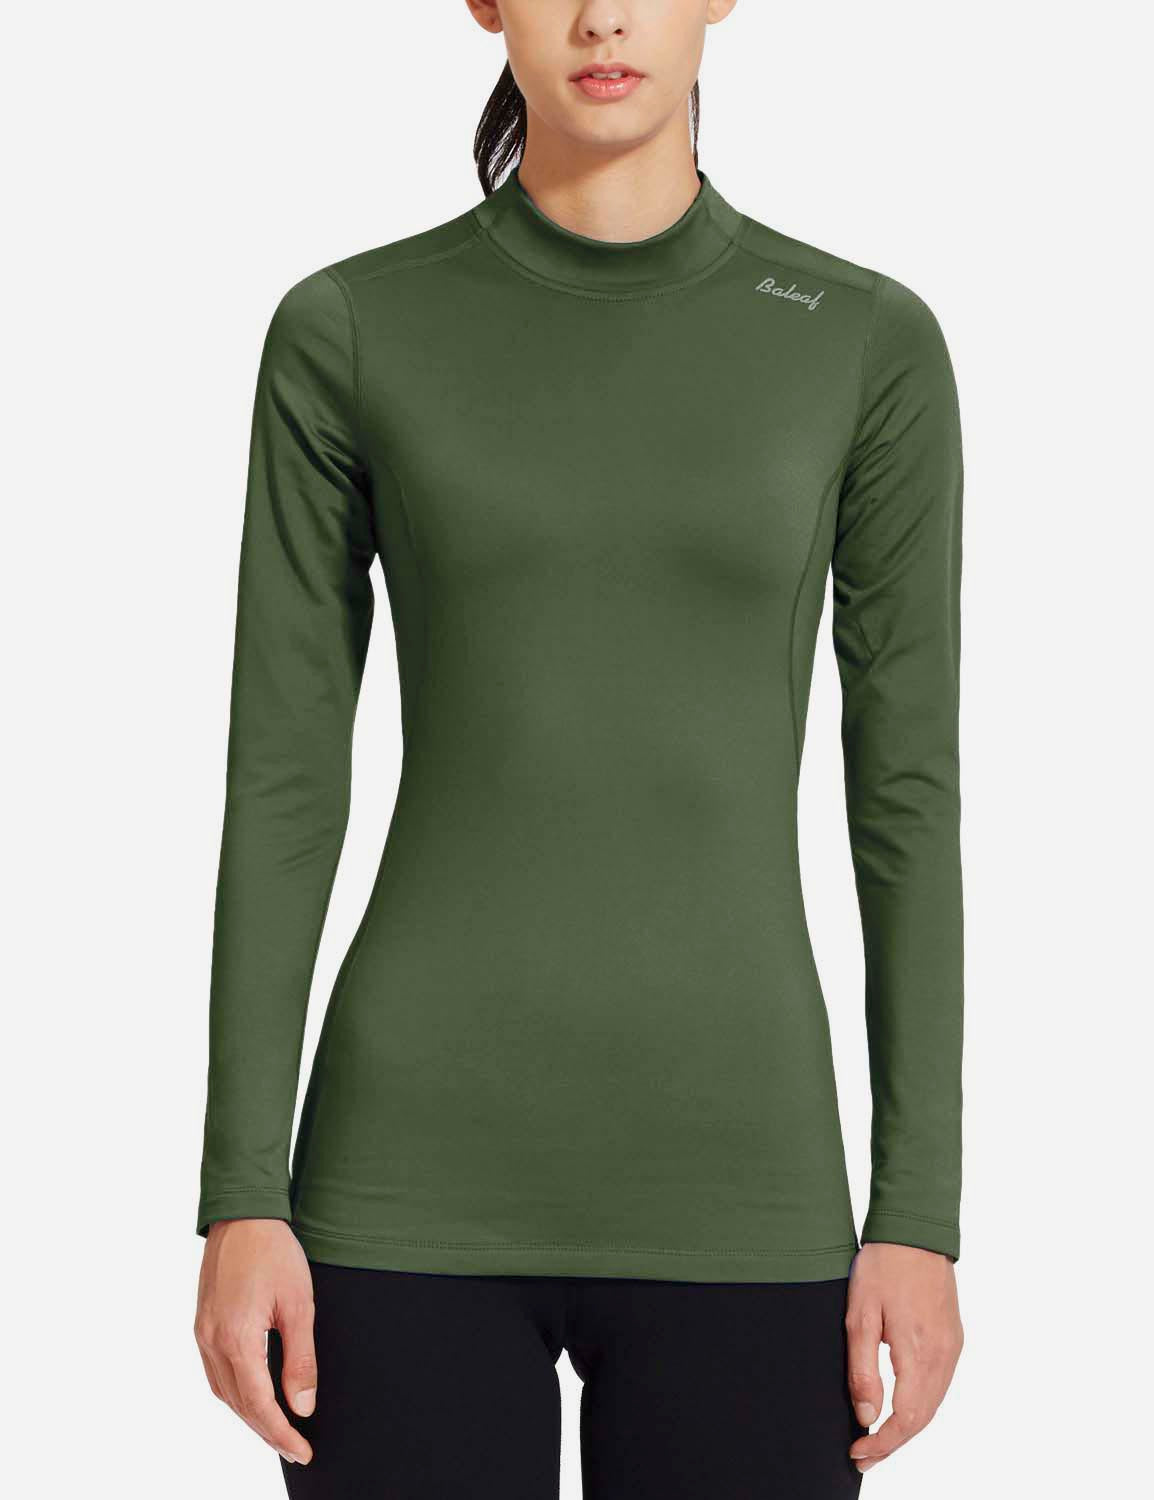 Baleaf Women's Basic Compression Mock-Neck Long Sleeved Shirt abd166 Green Front